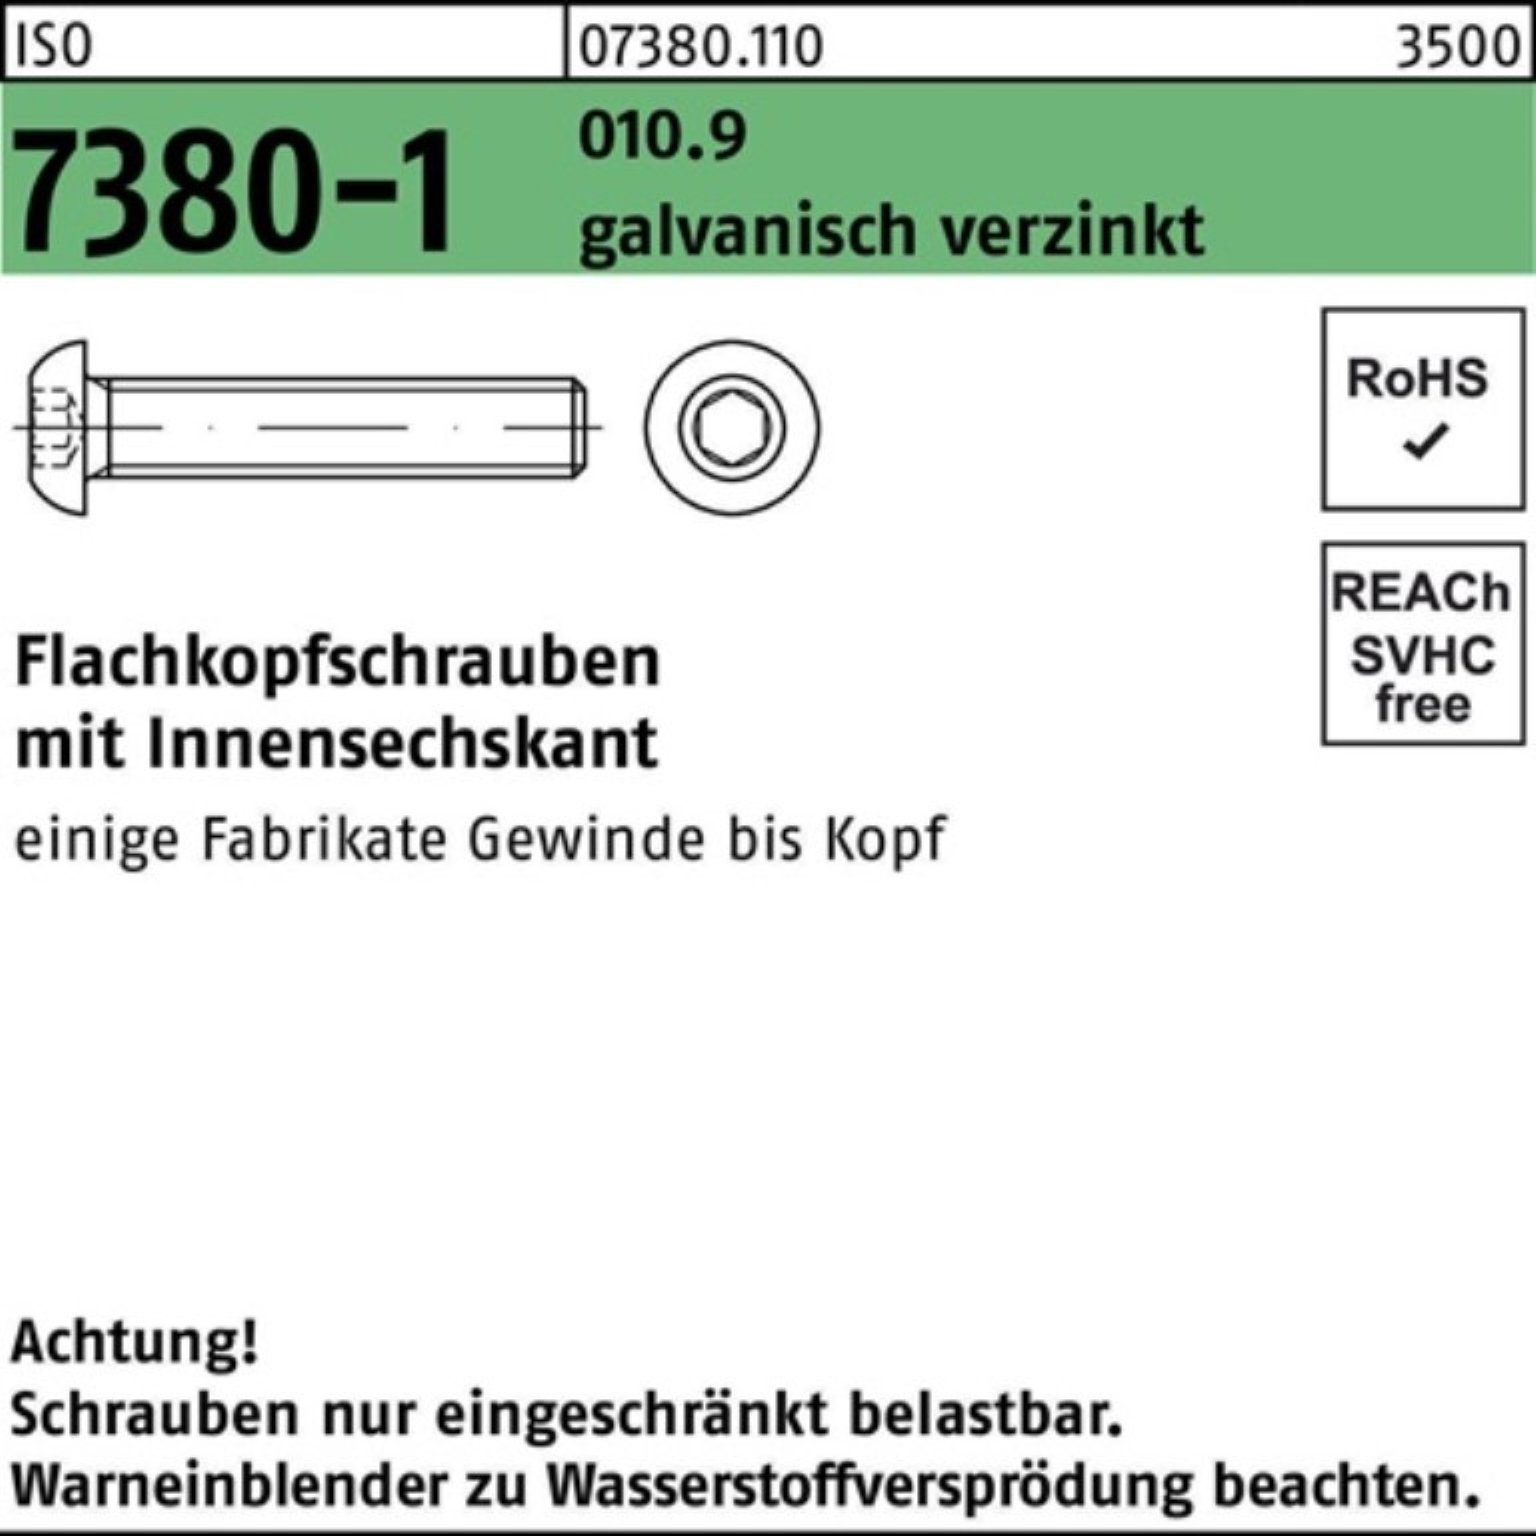 Reyher Schraube 100er galv.ve Innen-6kt Flachkopfschraube M12x20 Pack 010.9 ISO 7380-1